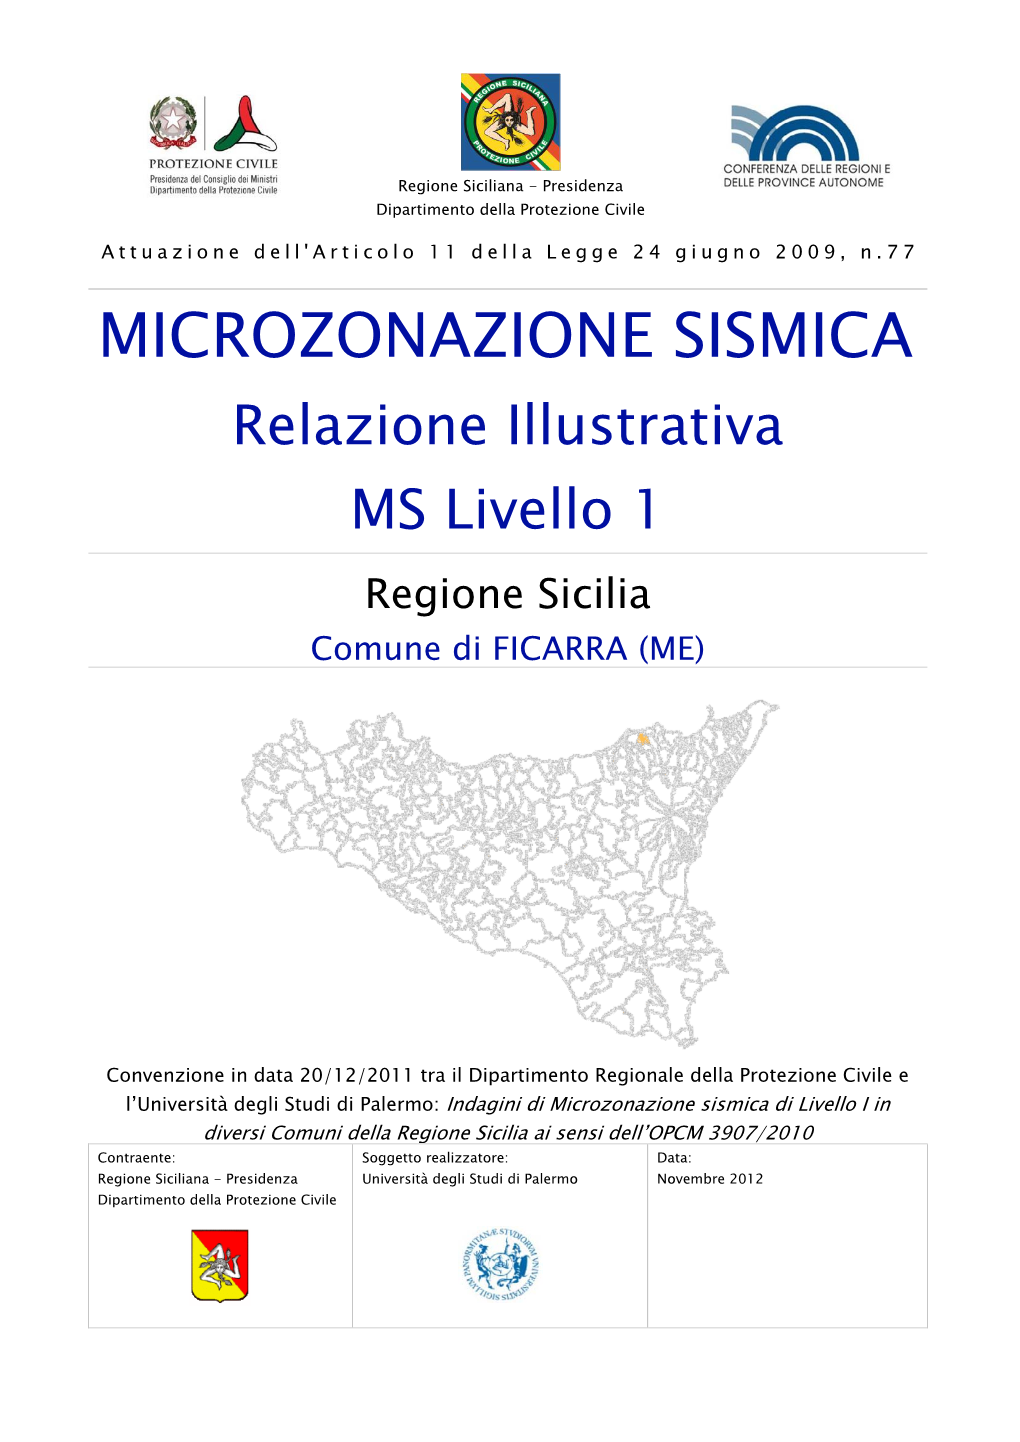 MICROZONAZIONE SISMICA Relazione Illustrativa MS Livello 1 Regione Sicilia Comune Di FICARRA (ME)